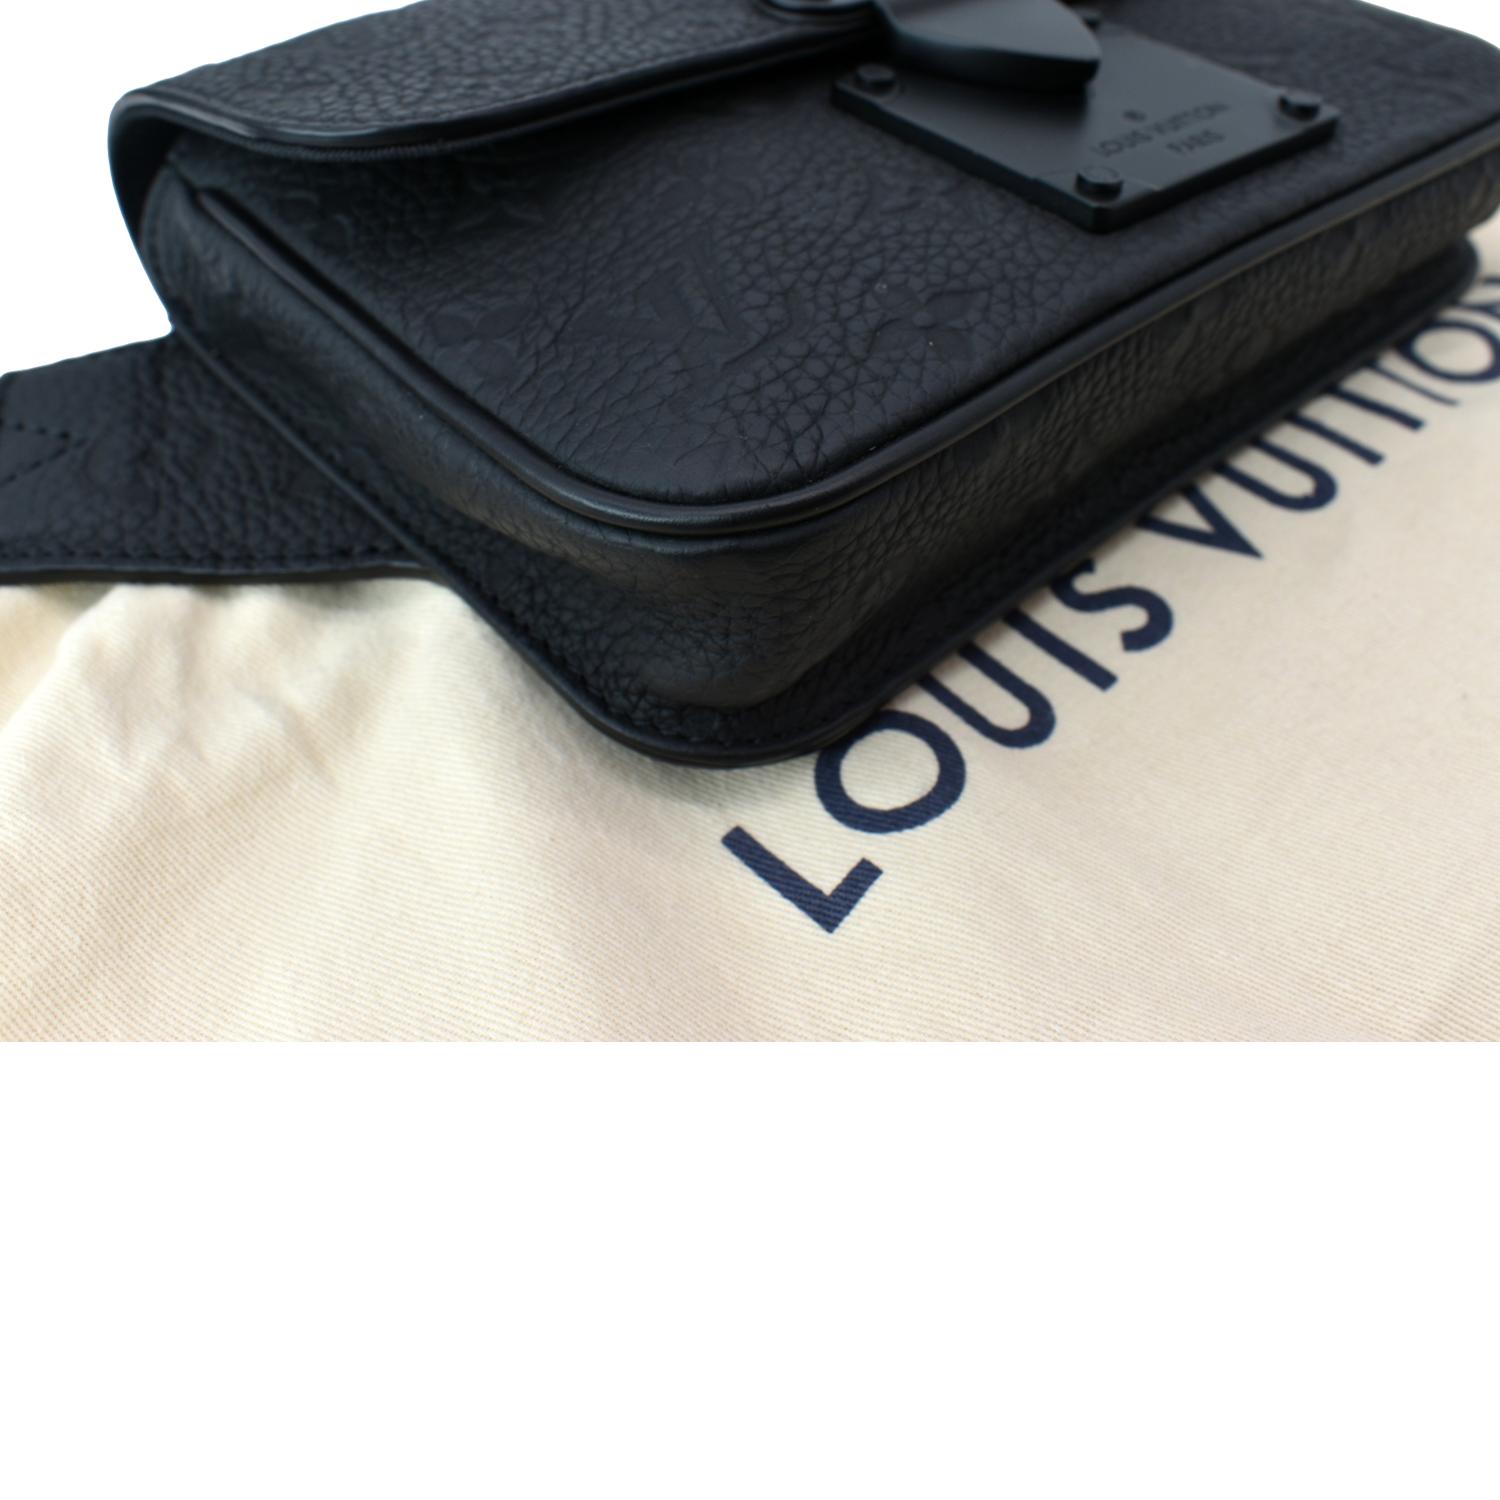 Louis Vuitton mens shoulder bag